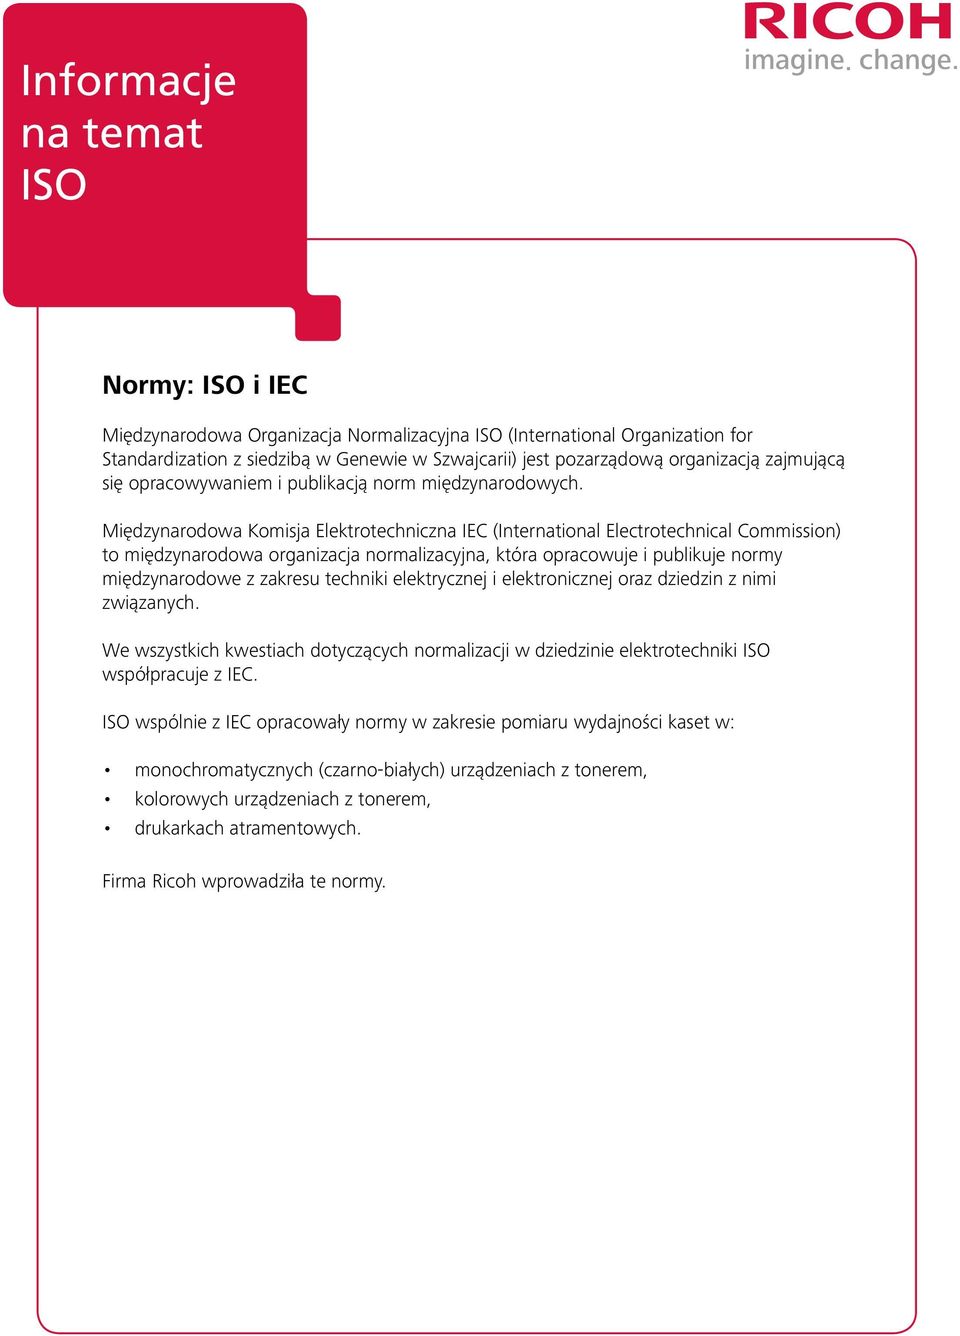 Międzynarodowa Komisja Elektrotechniczna IEC (International Electrotechnical Commission) to międzynarodowa organizacja normalizacyjna, która opracowuje i publikuje normy międzynarodowe z zakresu